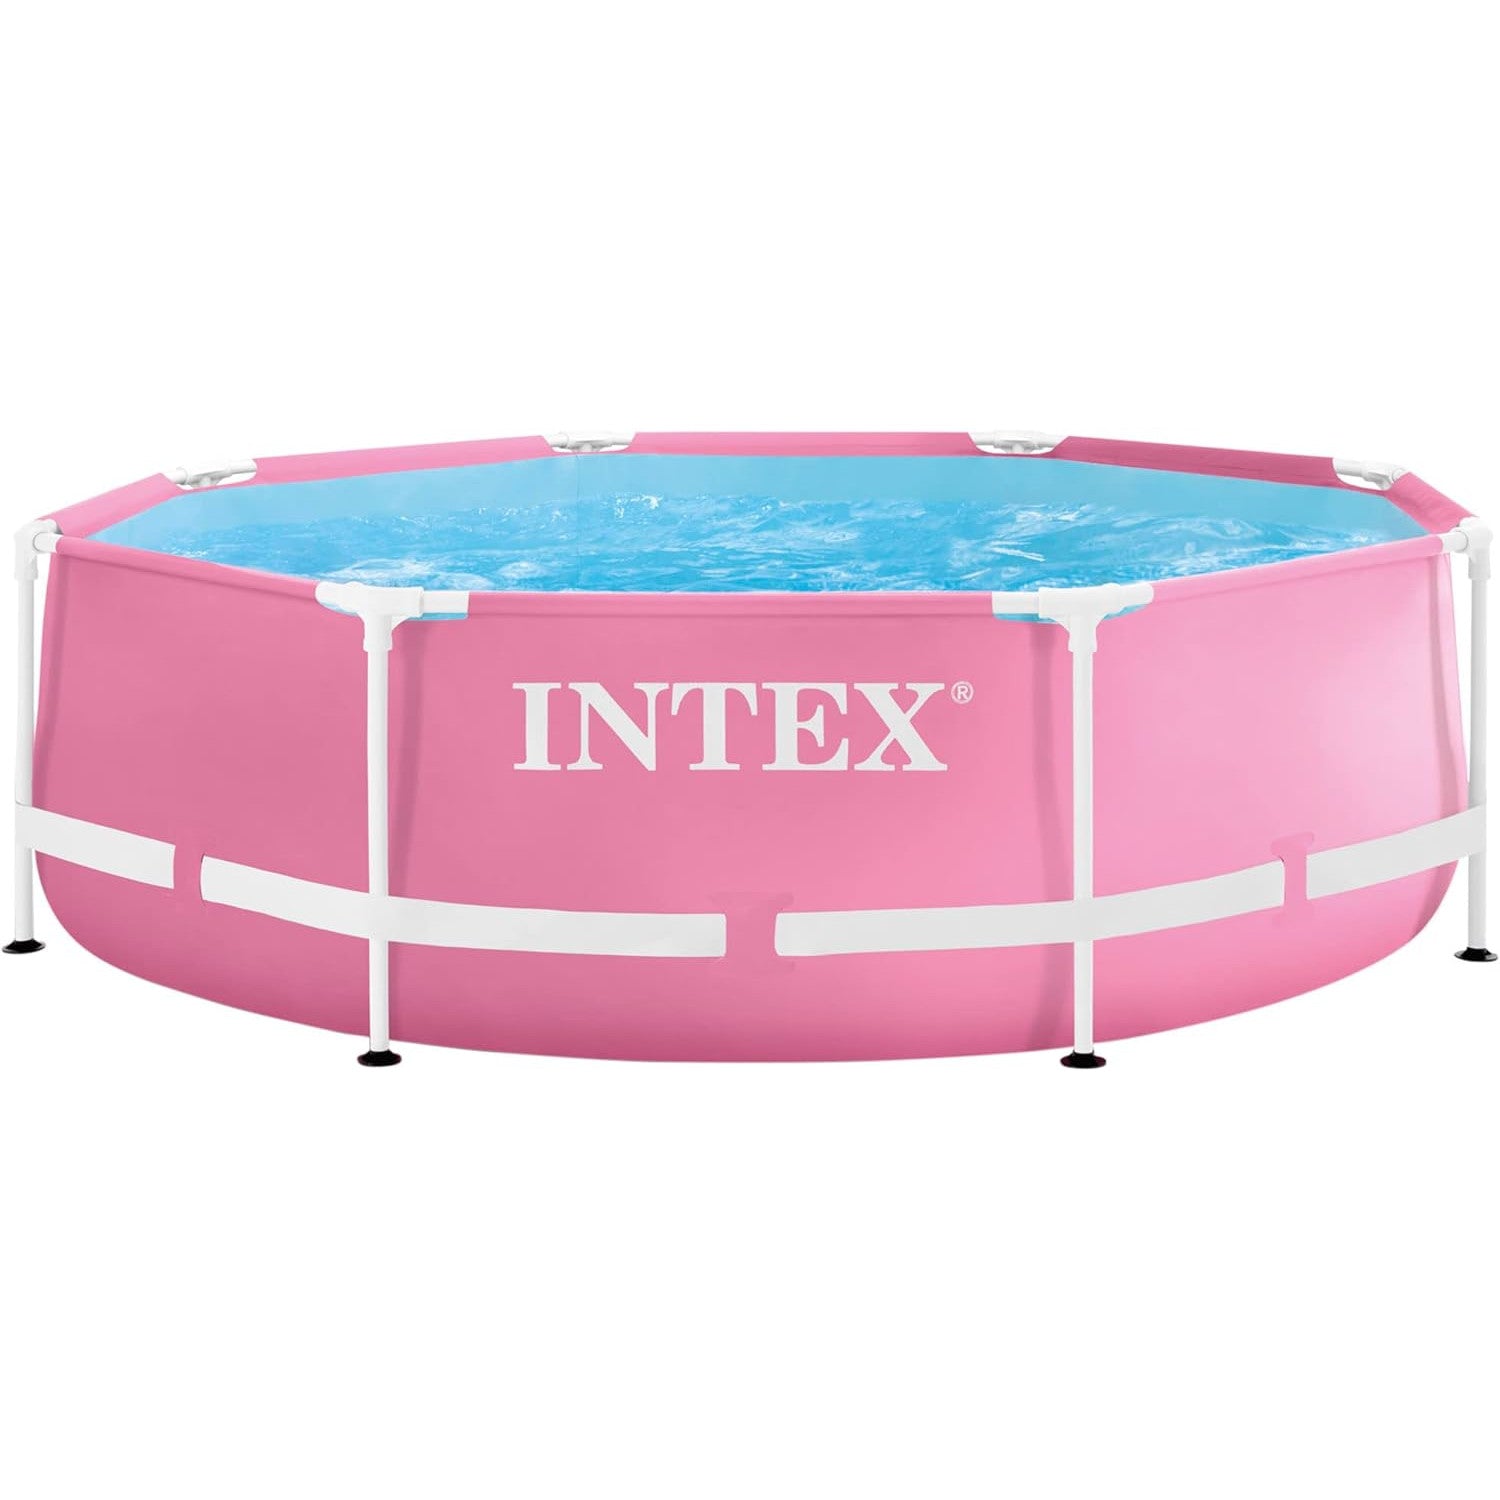 Intex Pink Metal Frame Pool 244x76cm - Poolpirat